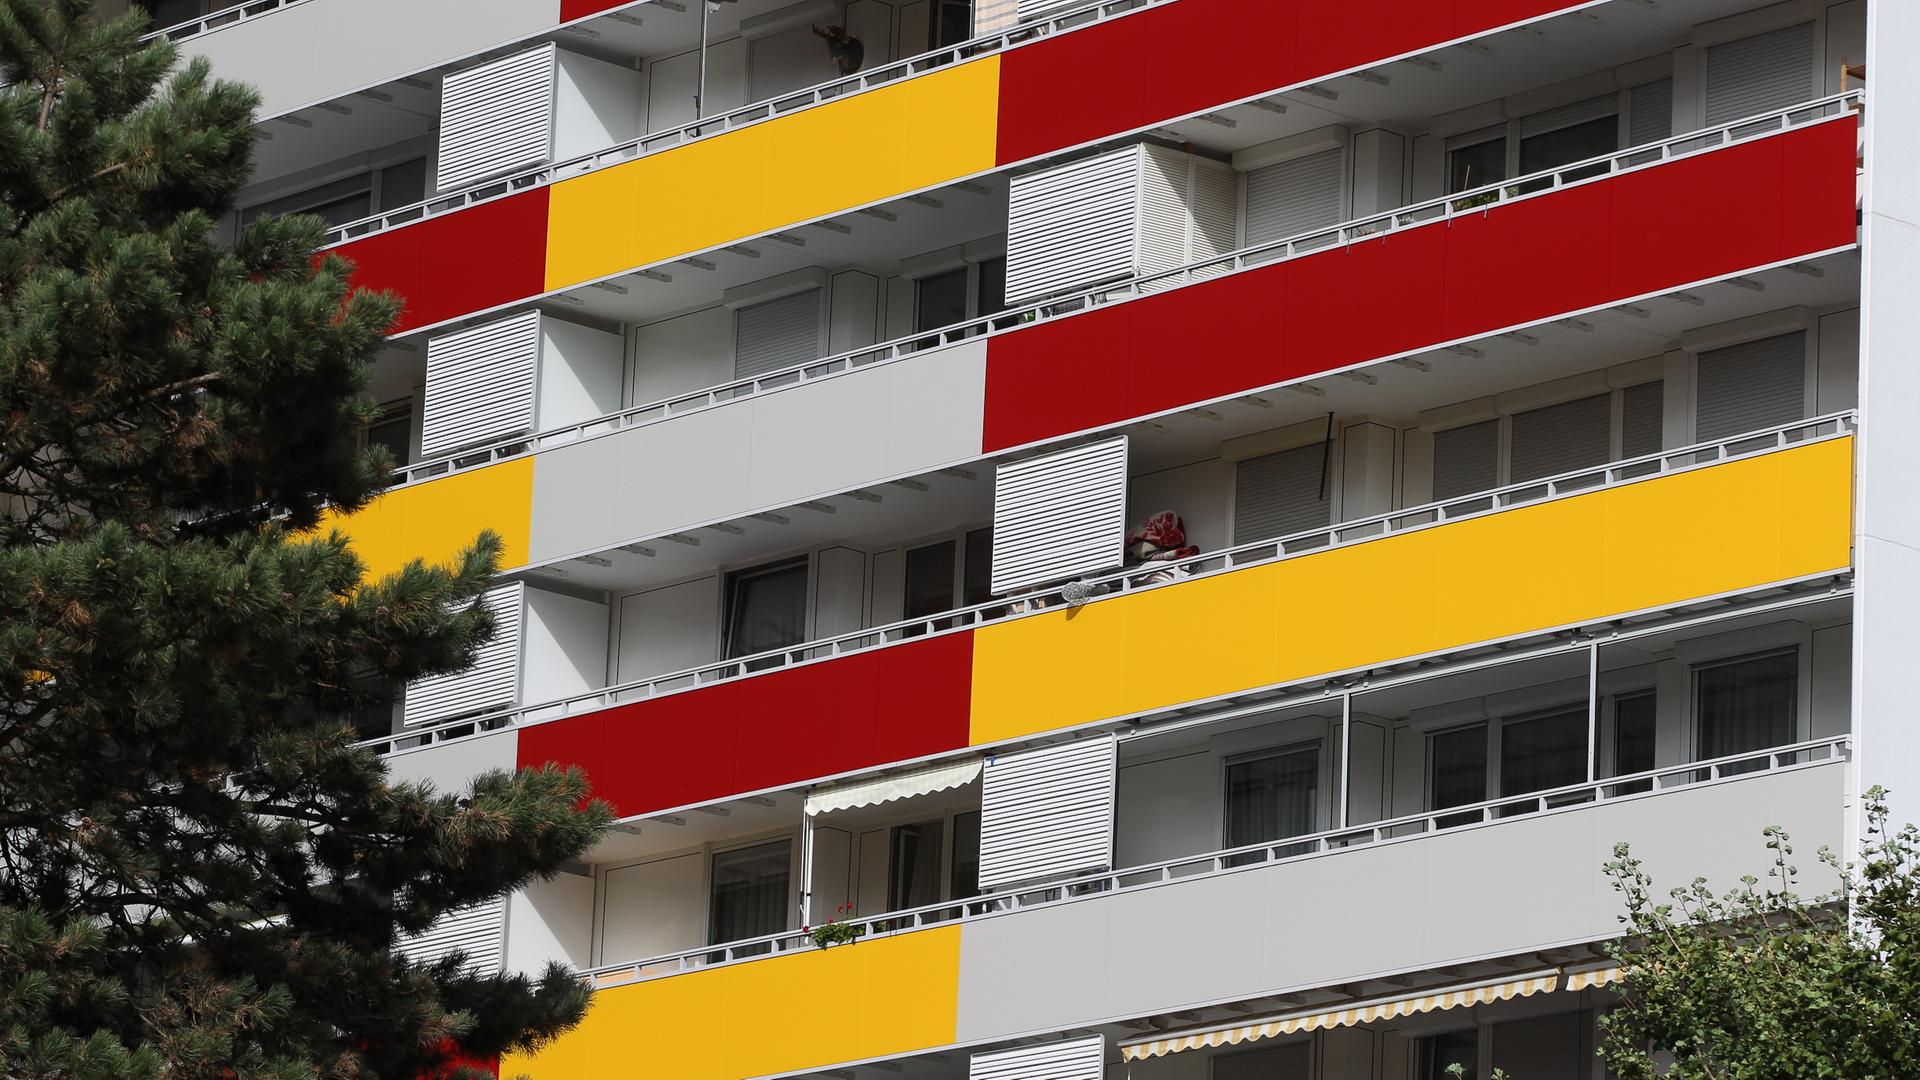 Hausfassade eines Mehrfamilienhausees mit gelber und roter Verkleidung an den Balkonen.